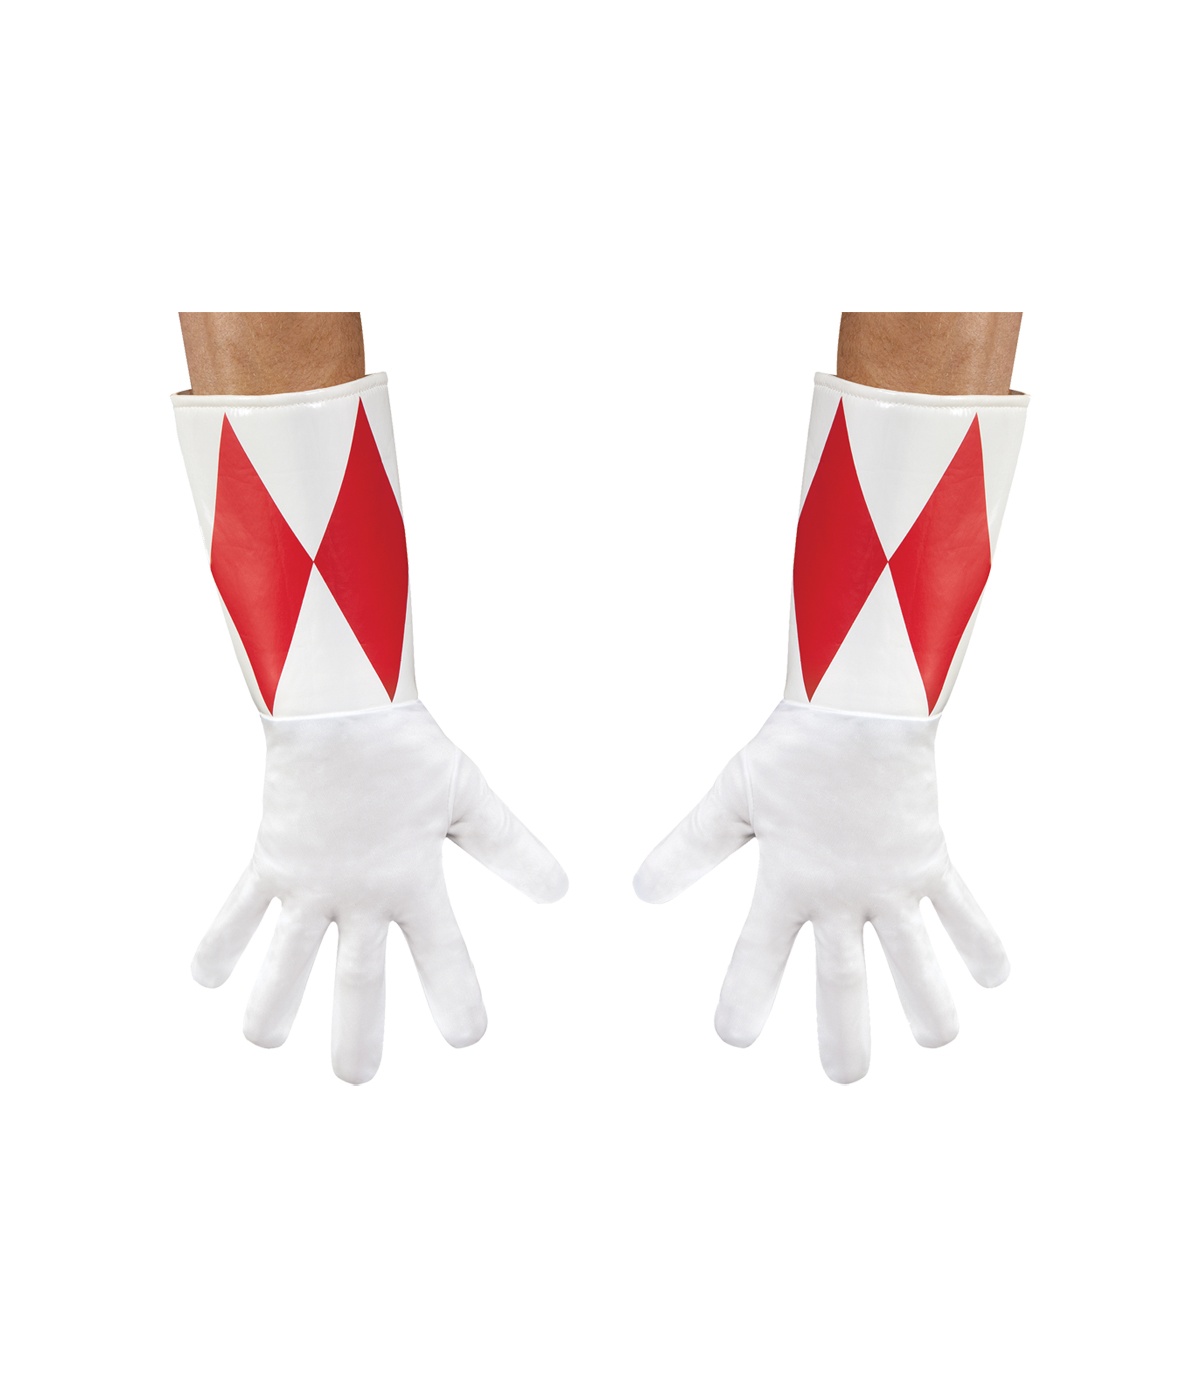  Red Power Ranger Grownup Gloves